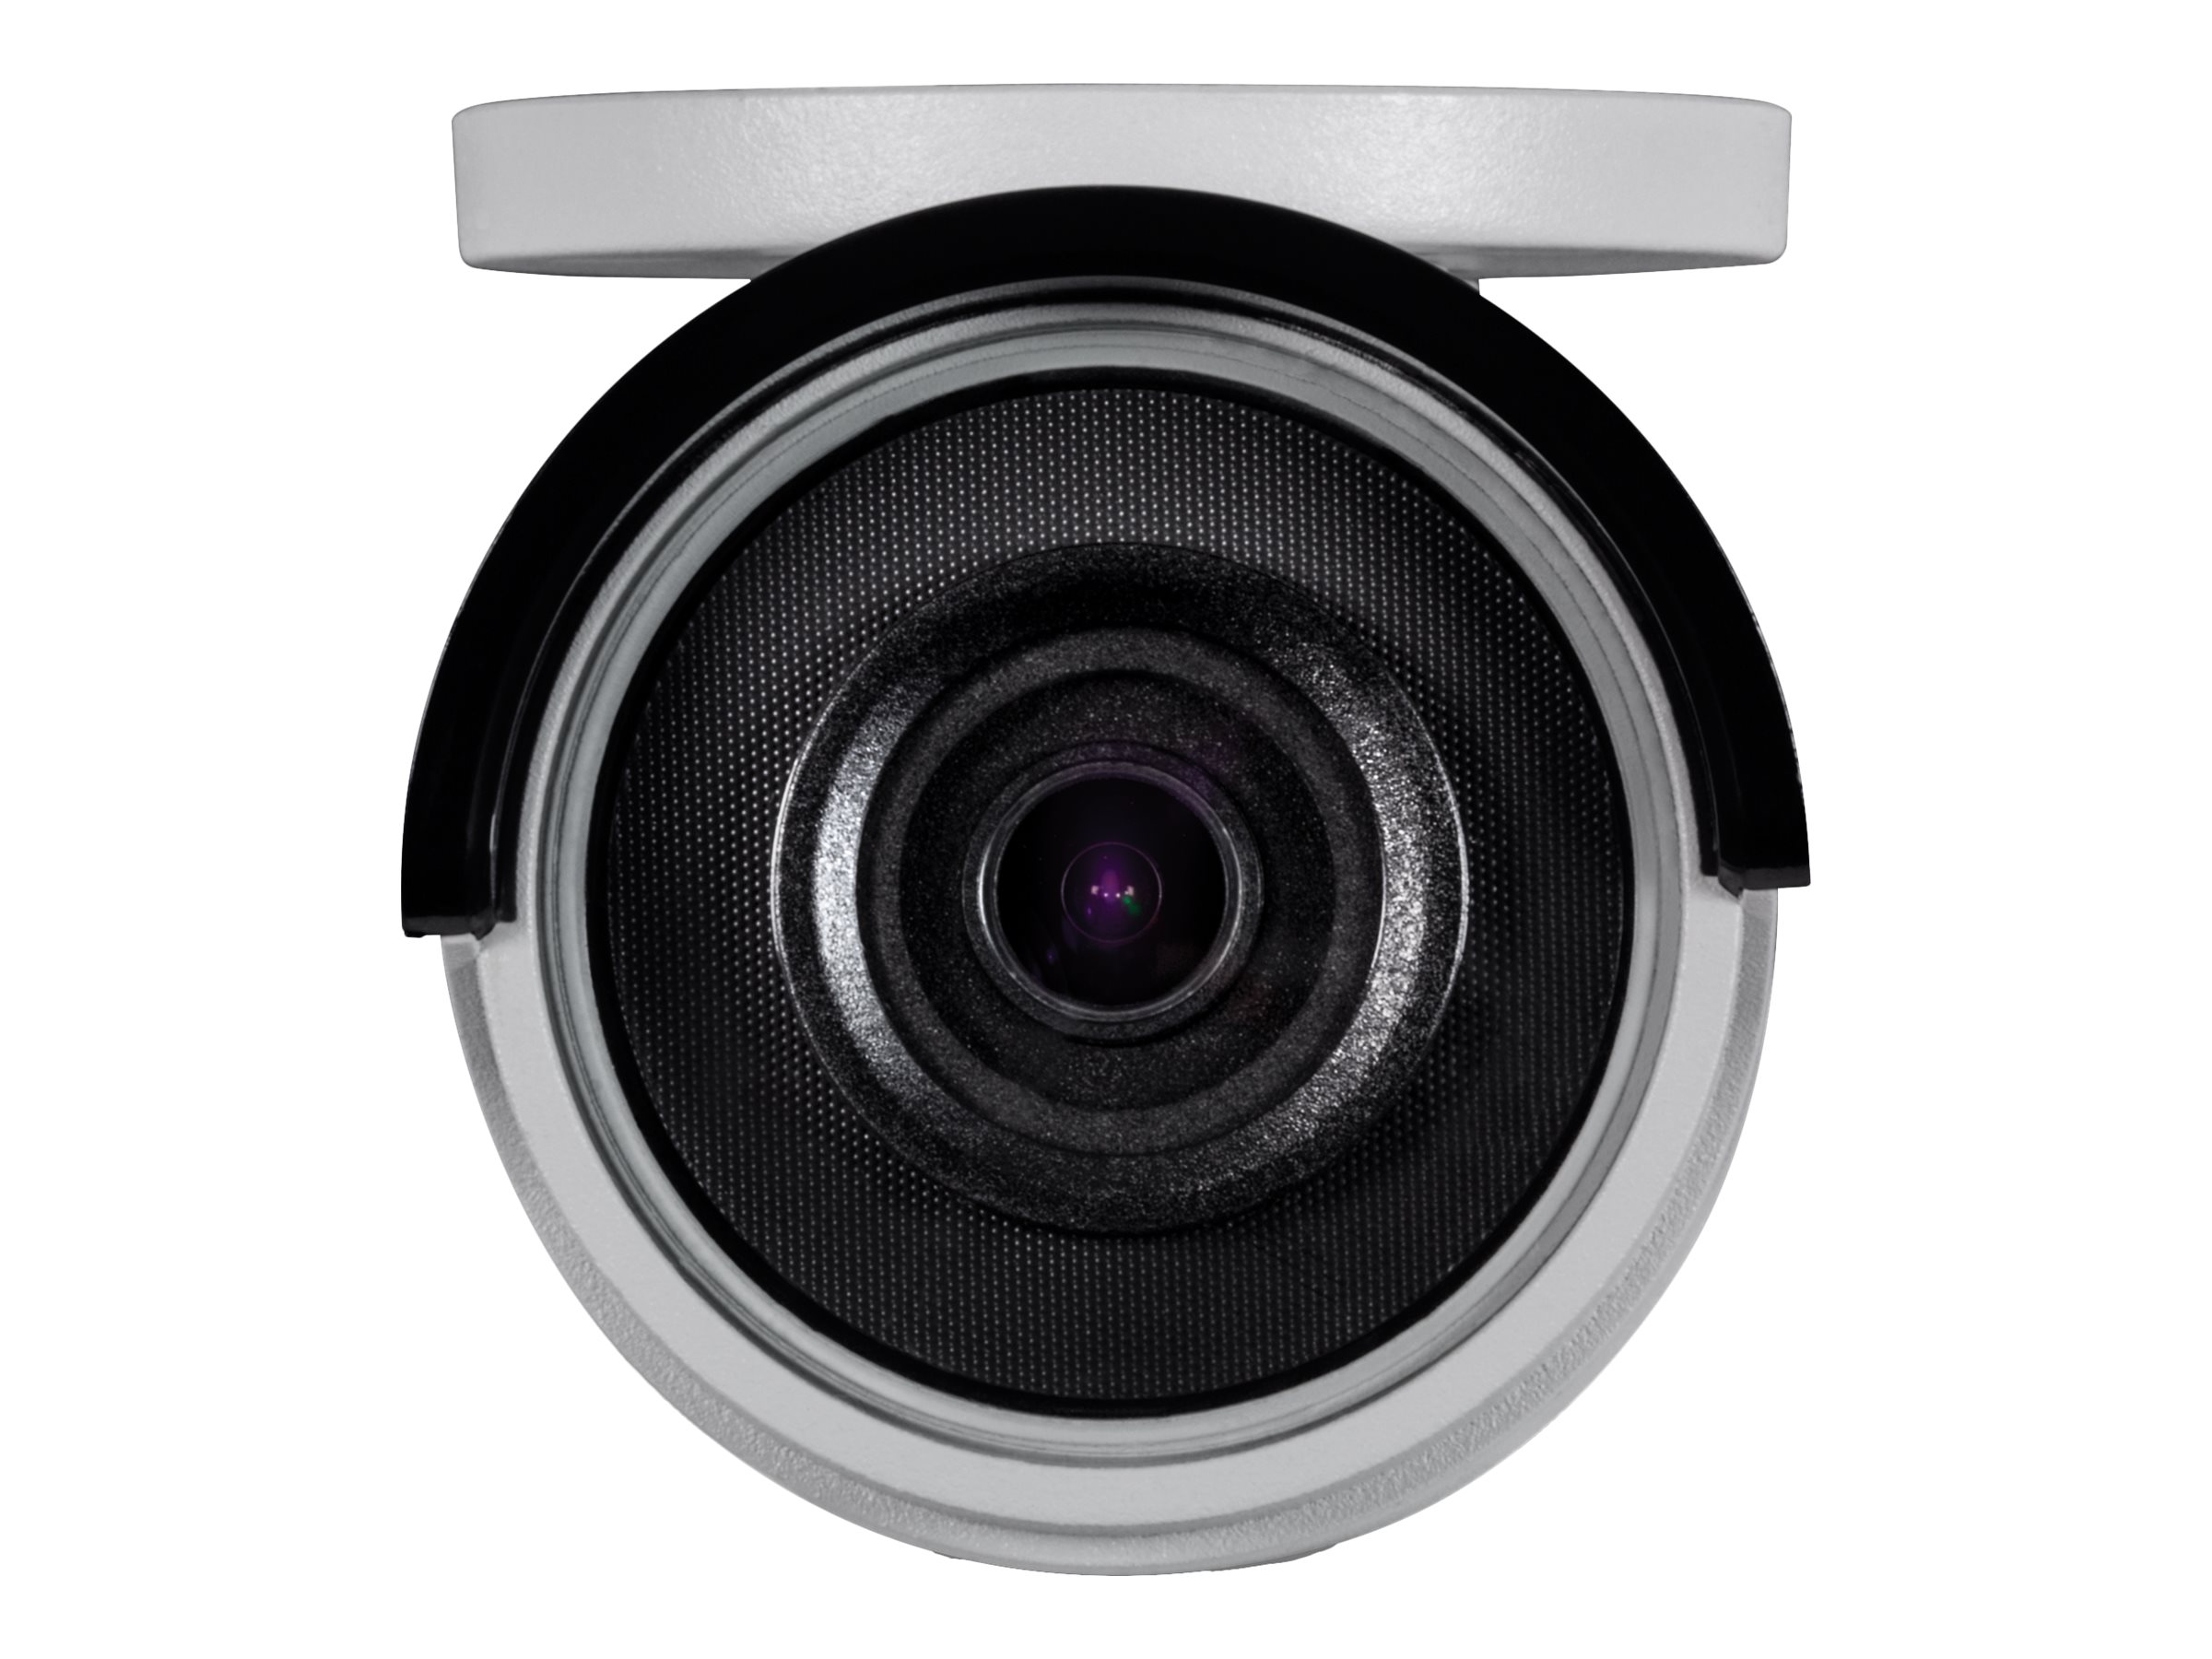 TRENDnet TV IP318PI - Network surveillance camera